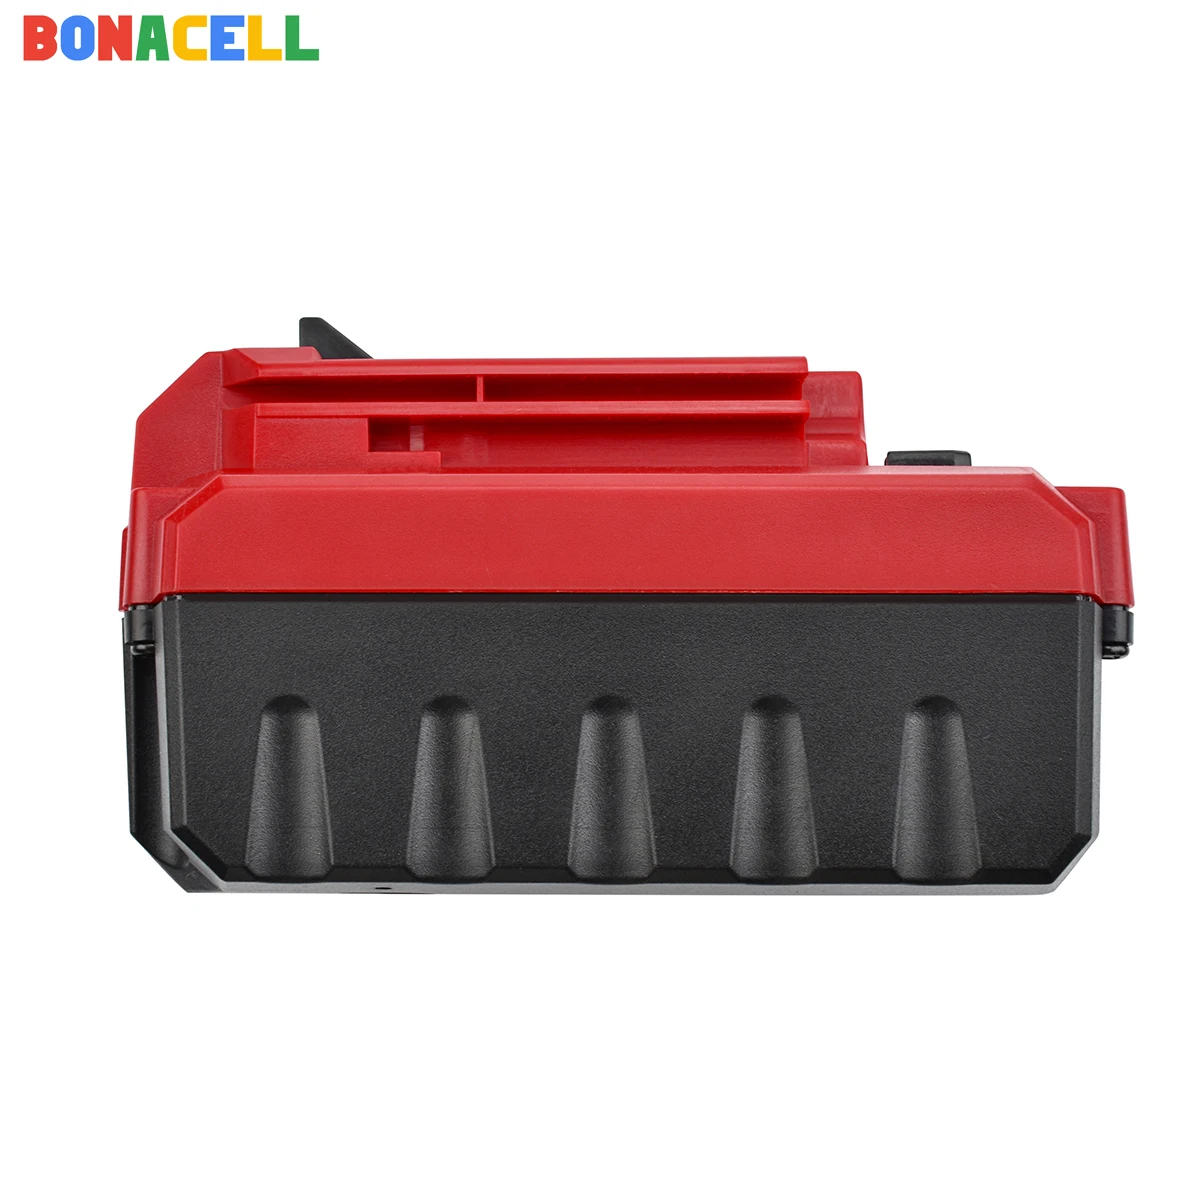 Bonacell 20V 6.0 Ah Li-ion Aku Porter Cable PCC685L PCC680L PCC681L PCCK602L2 PCC600 PCC640 PCC682L PCC685LP PCC600